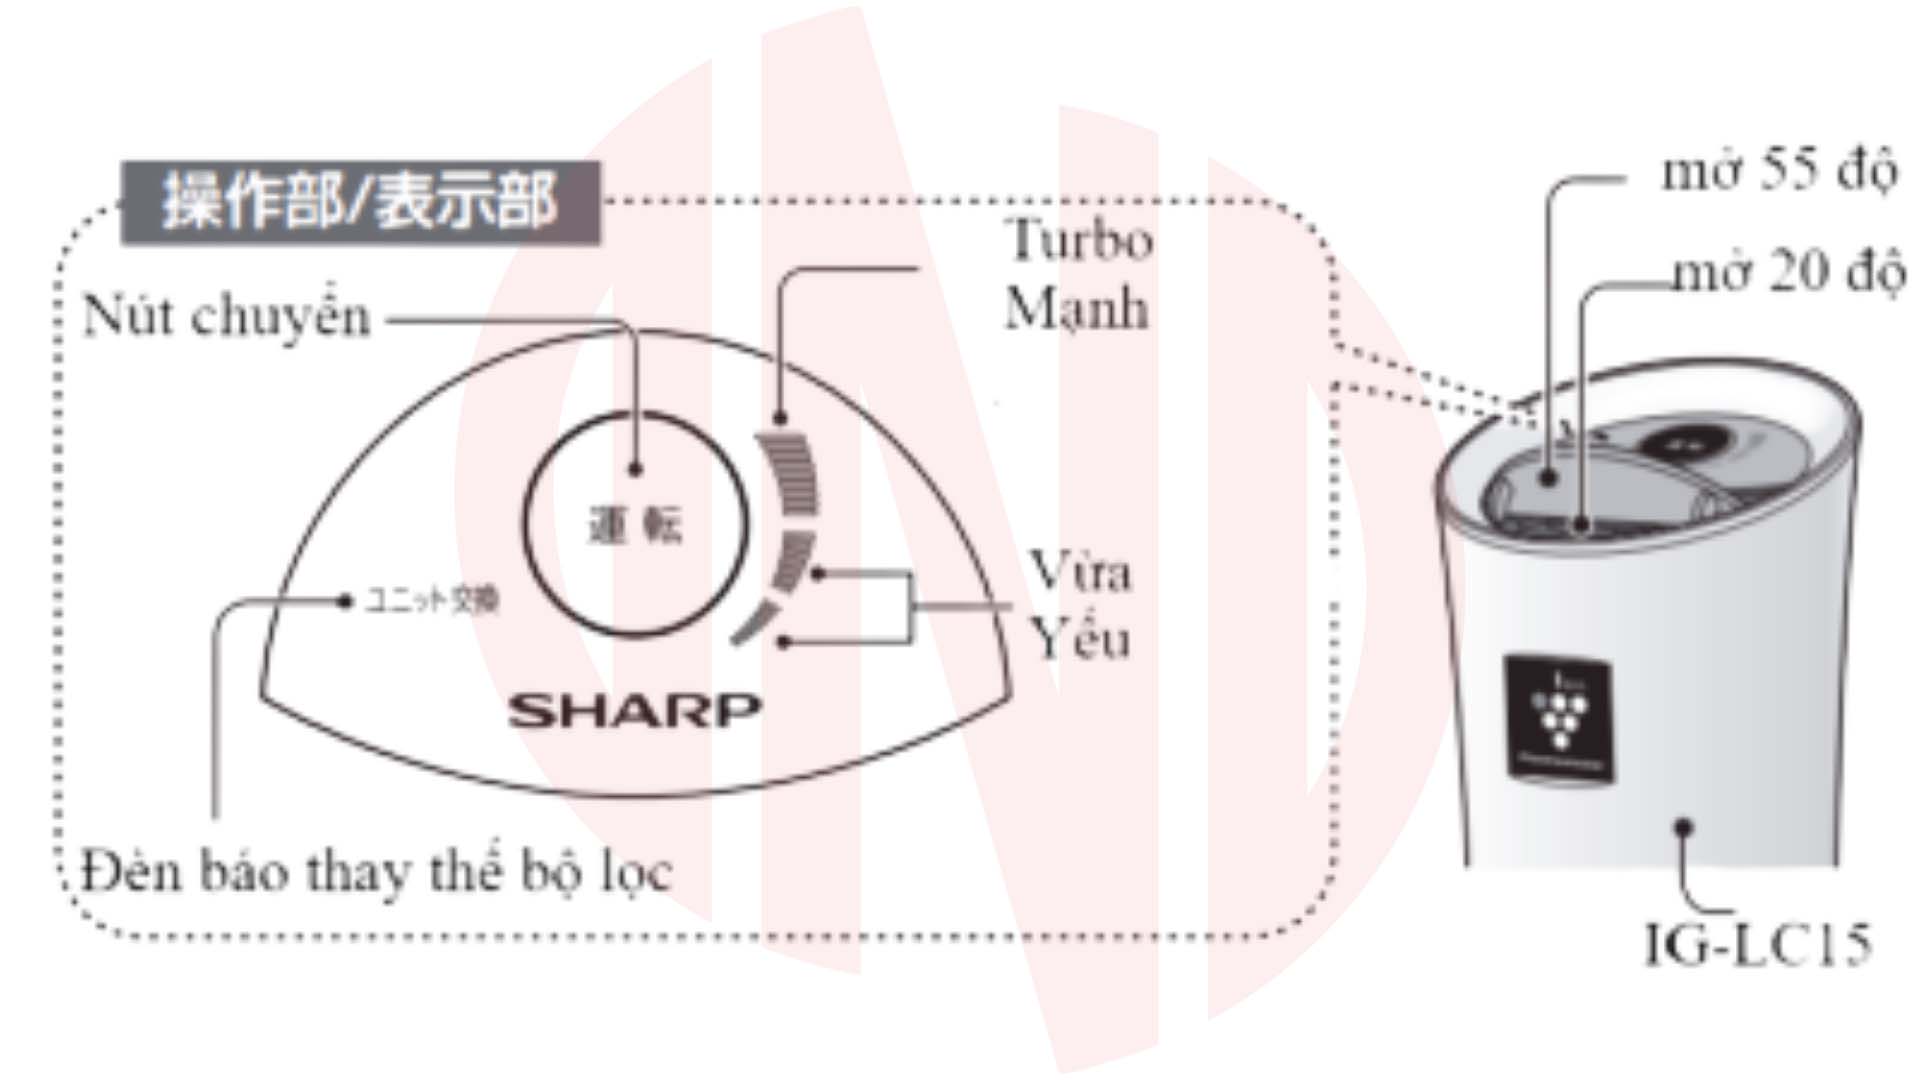 Hướng dẫn sử dụng máy lọc không khí ô tô Sharp IG-LC15-W